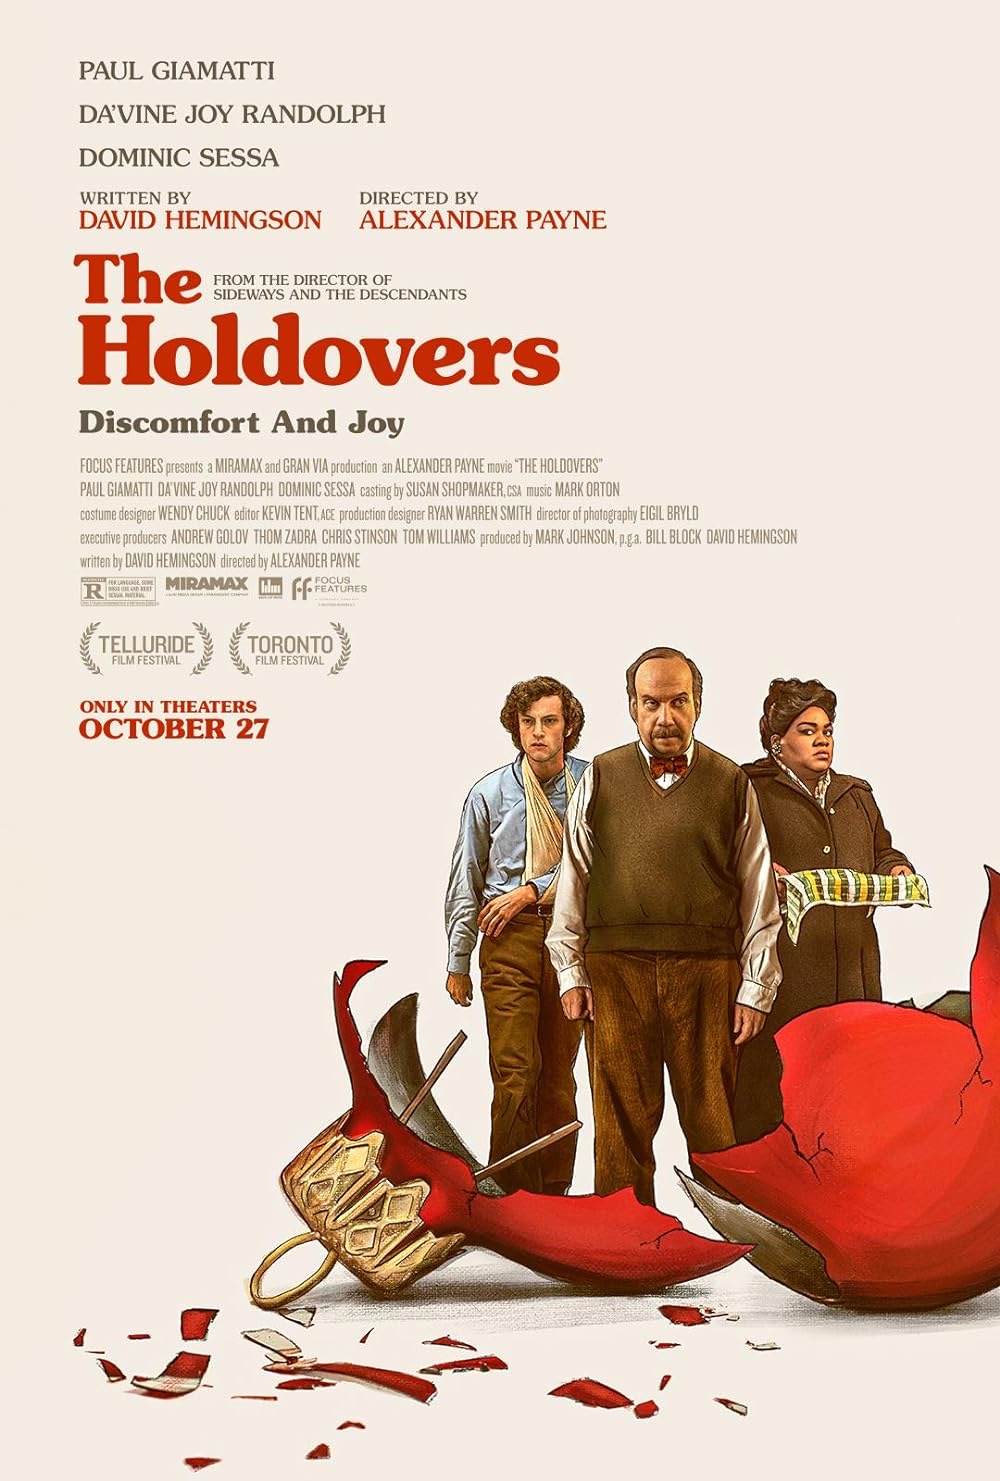 استديوهات ميراماكس مملوكة من قبل beIN تحت في بتألق فيلم  The Holdovers  خلال توزيع جوائز الأوسكار .